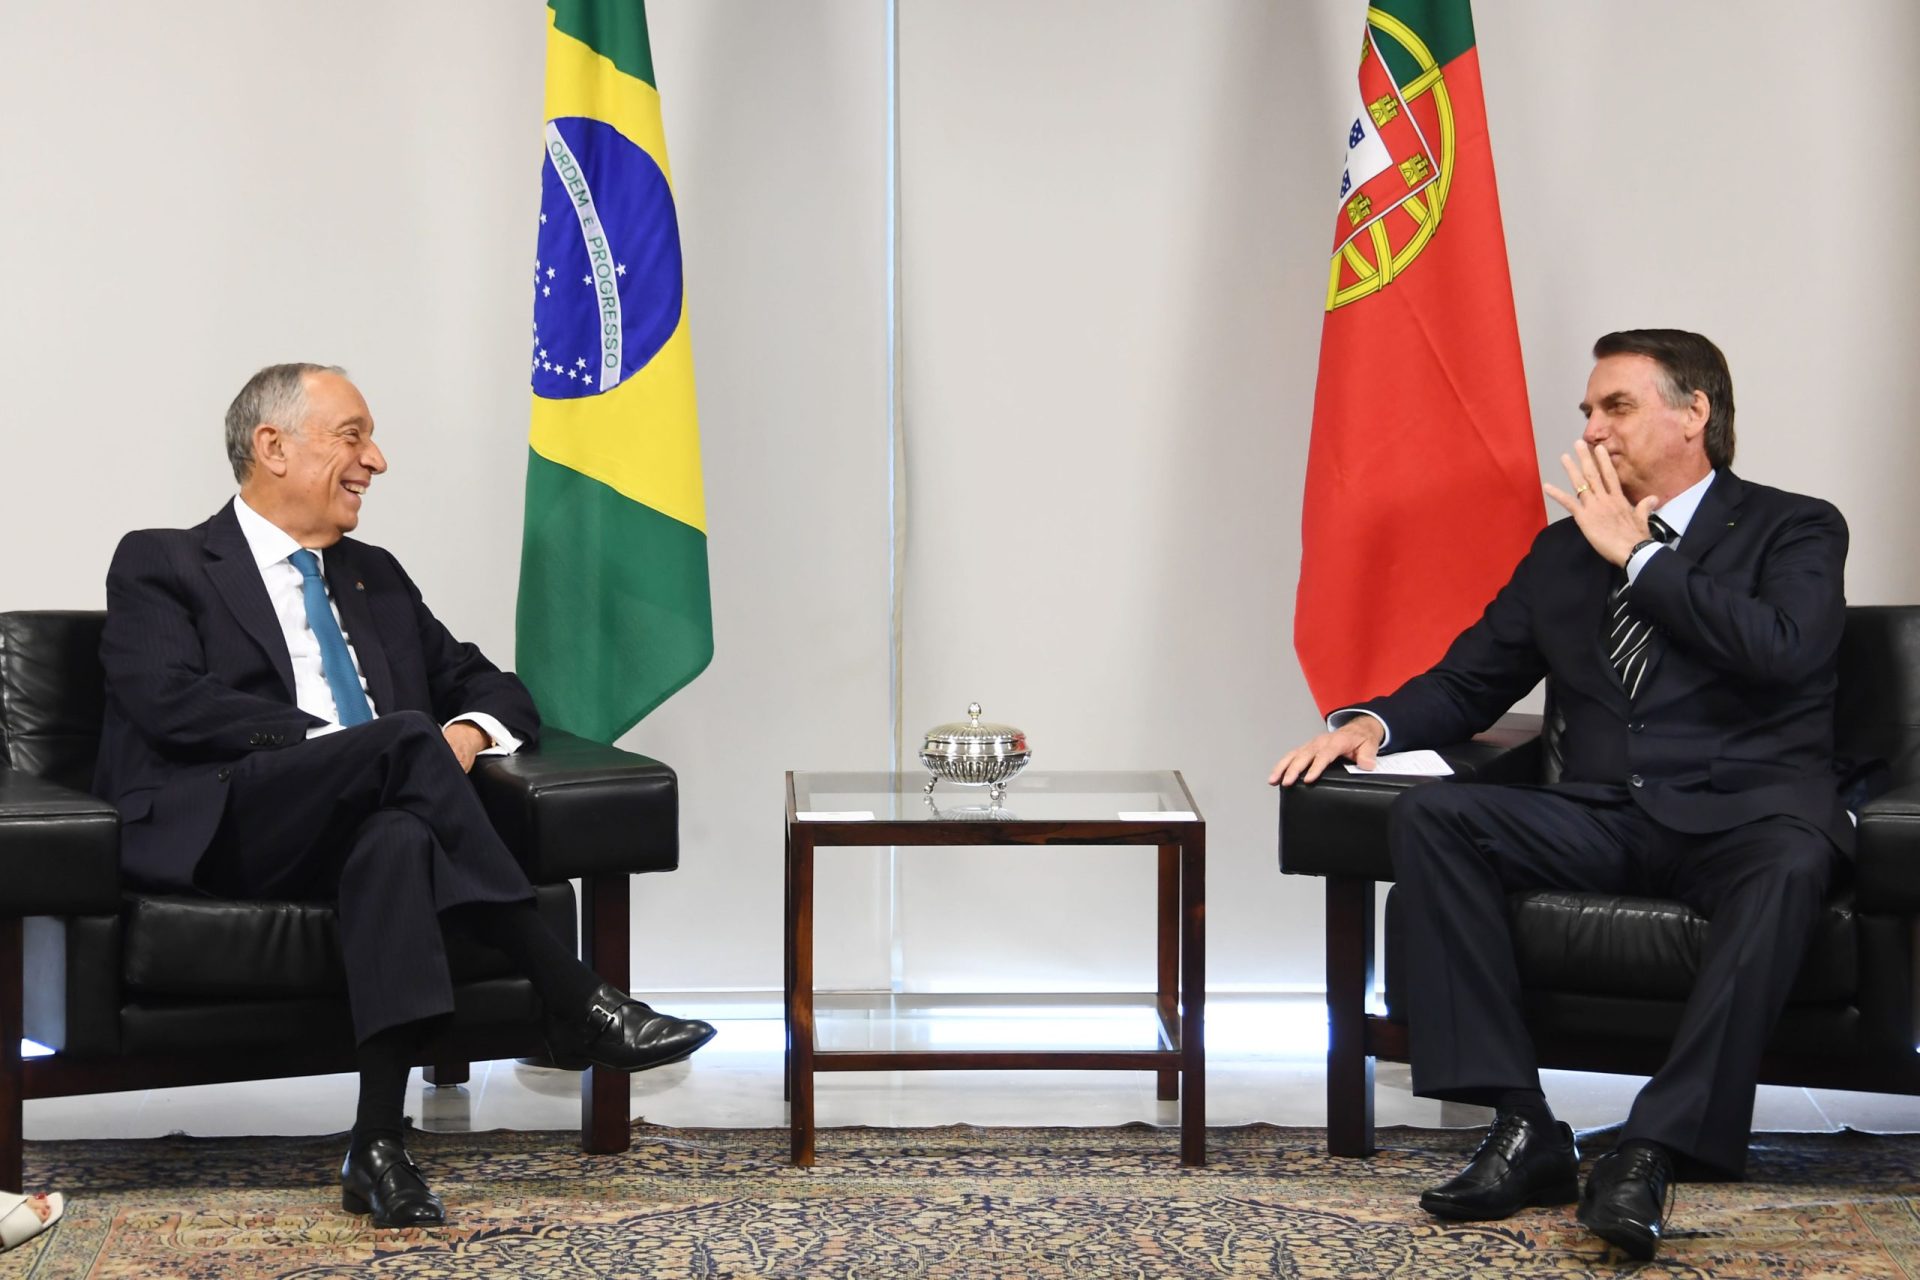 Tratou-se de uma “reunião entre irmãos”, diz Marcelo sobre o encontro com Bolsonaro